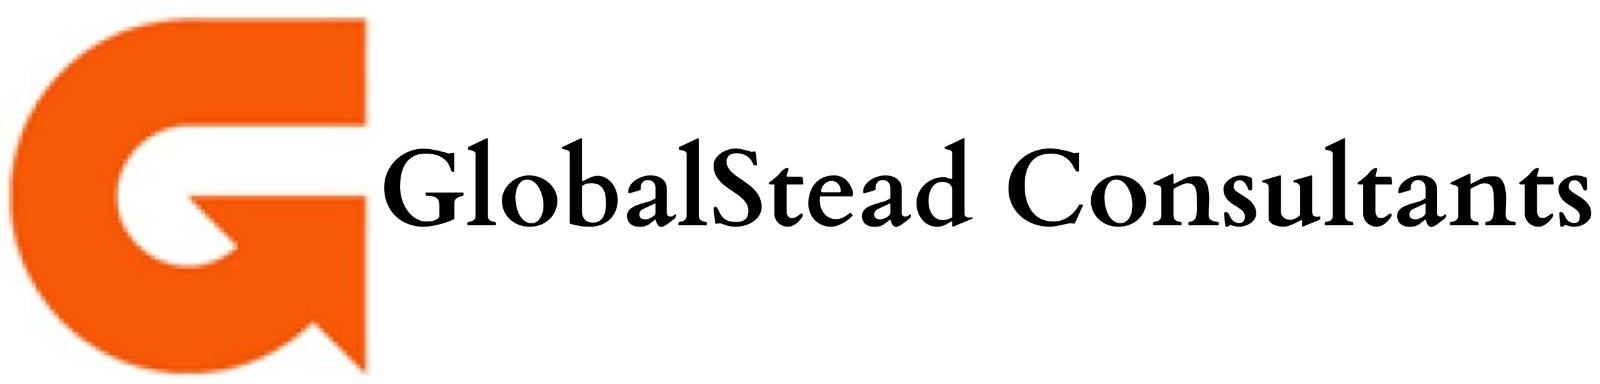 GlobalStead_Consultants